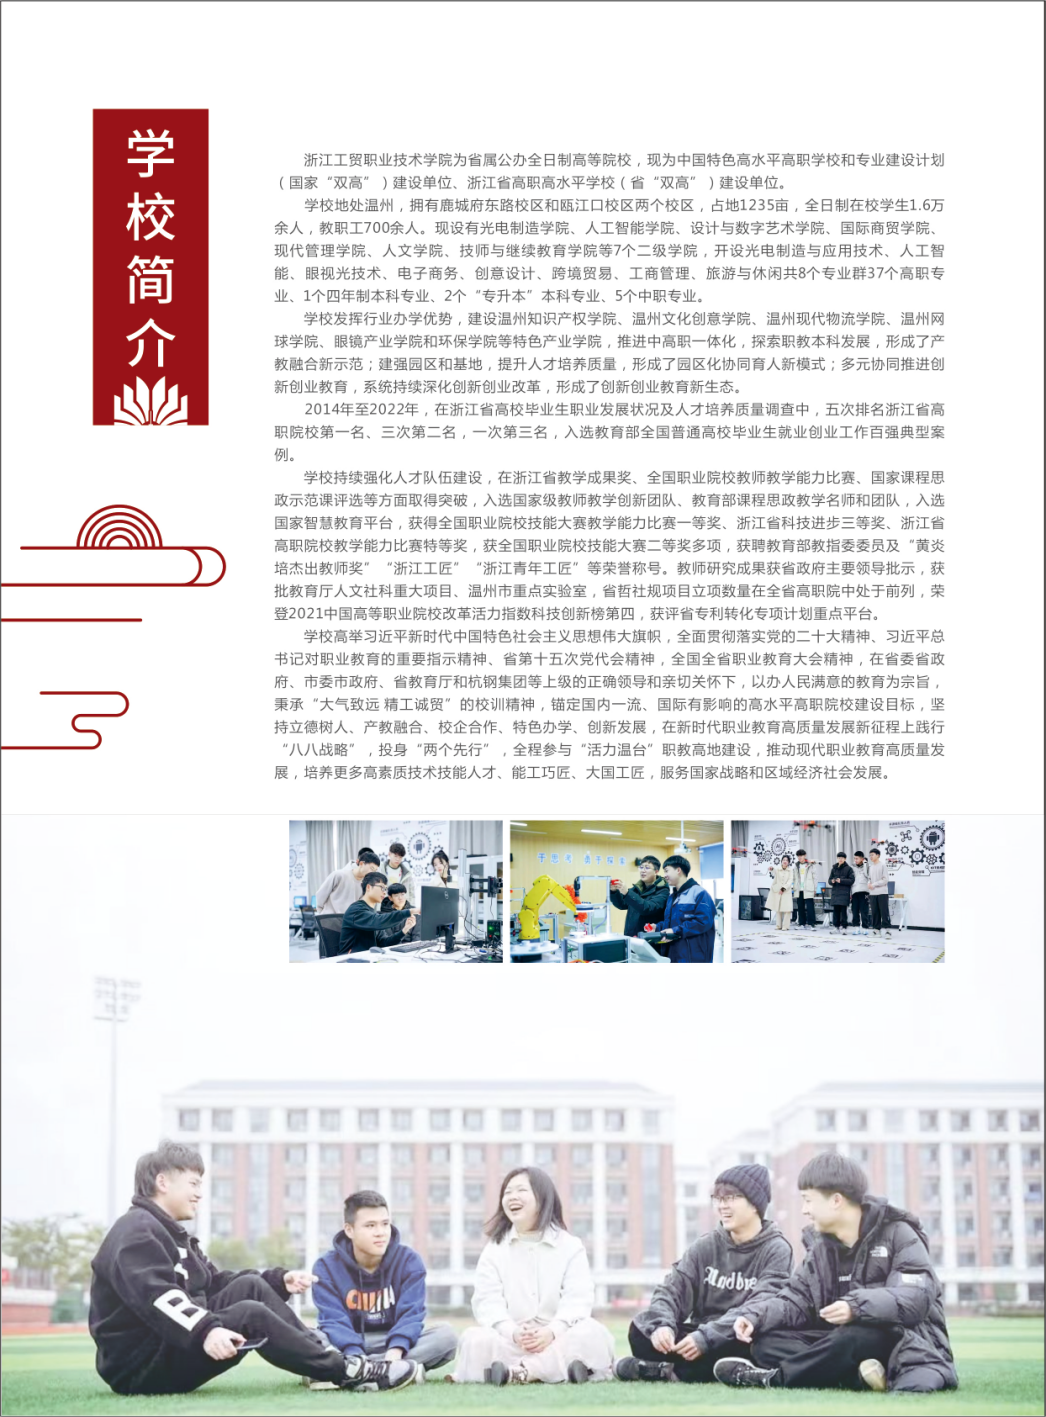 浙江工贸职业技术学院－2023年招生简章